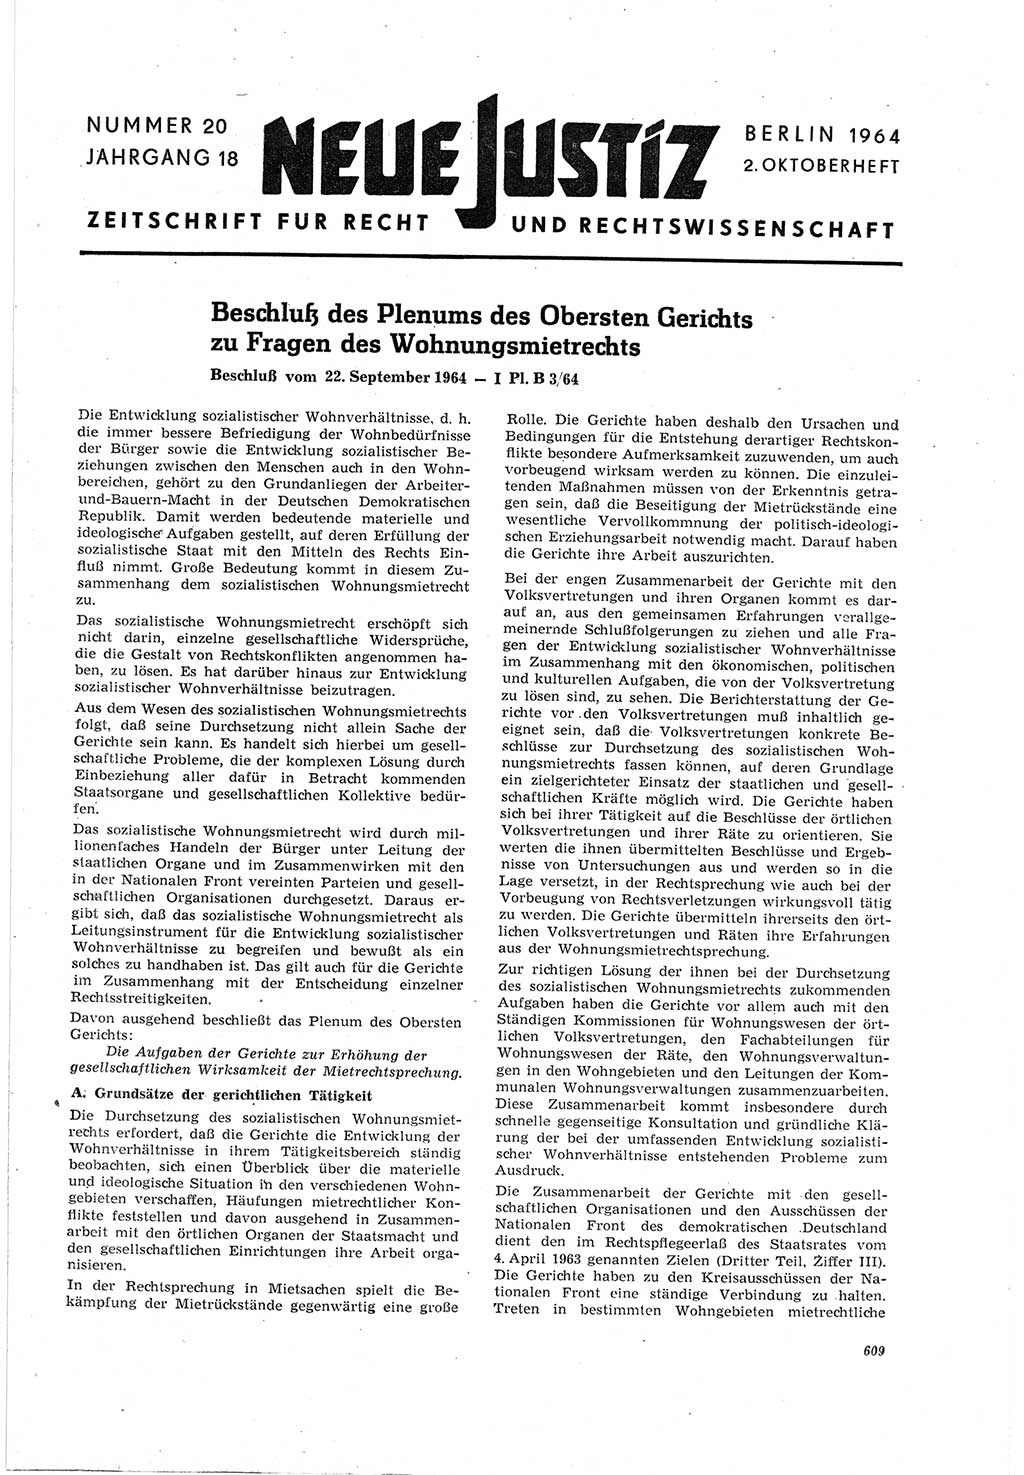 Neue Justiz (NJ), Zeitschrift für Recht und Rechtswissenschaft [Deutsche Demokratische Republik (DDR)], 18. Jahrgang 1964, Seite 609 (NJ DDR 1964, S. 609)